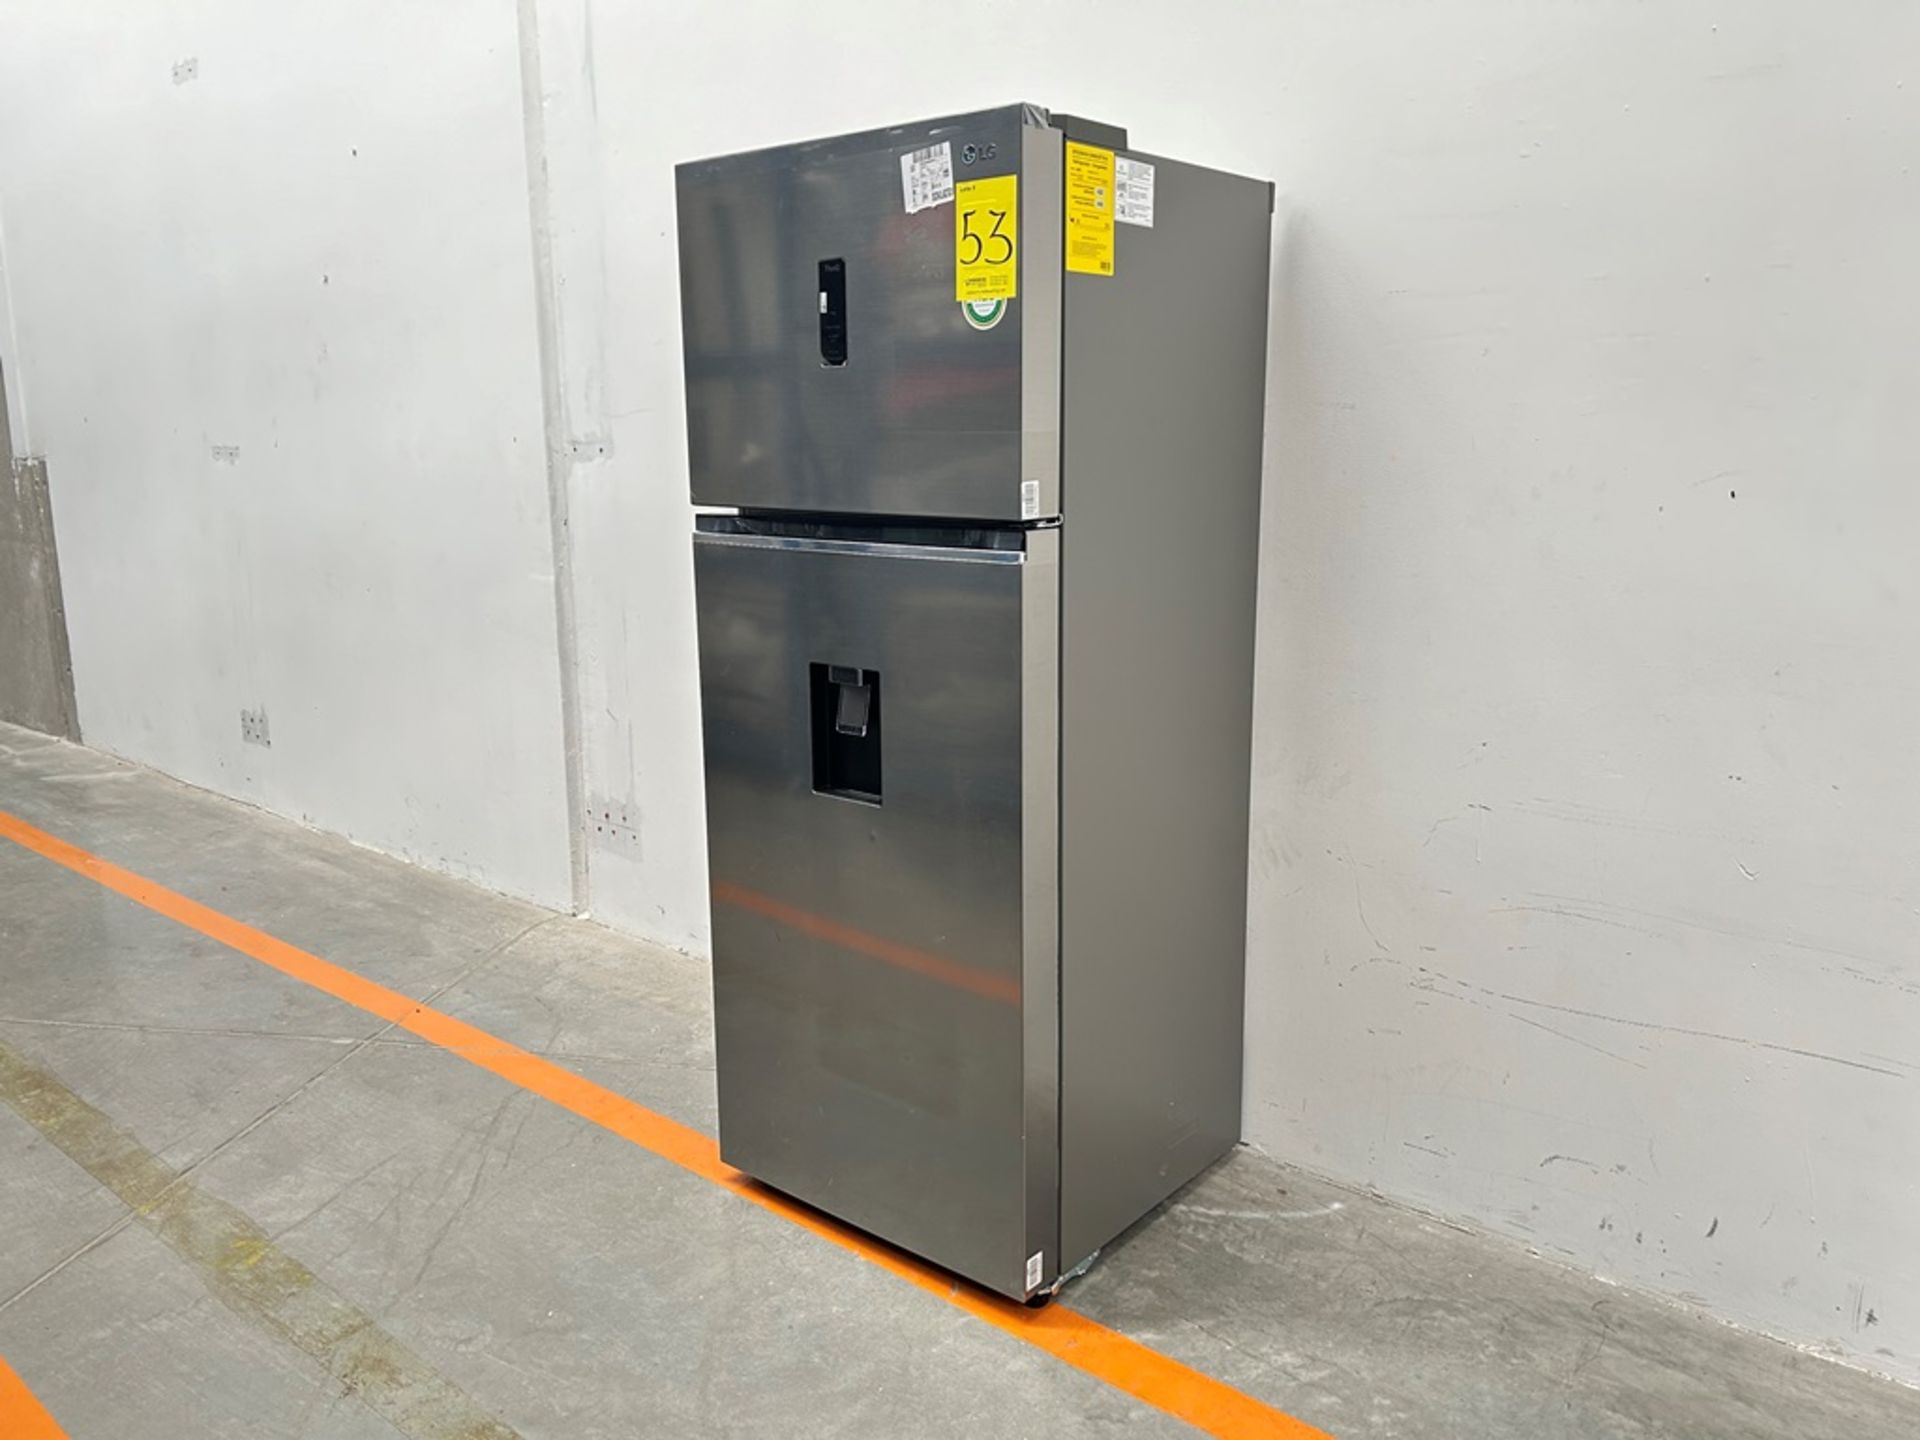 (NUEVO) Refrigerador con dispensador de agua Marca LG, Modelo VT40AWP, Serie 48304, Color GRIS - Image 3 of 11